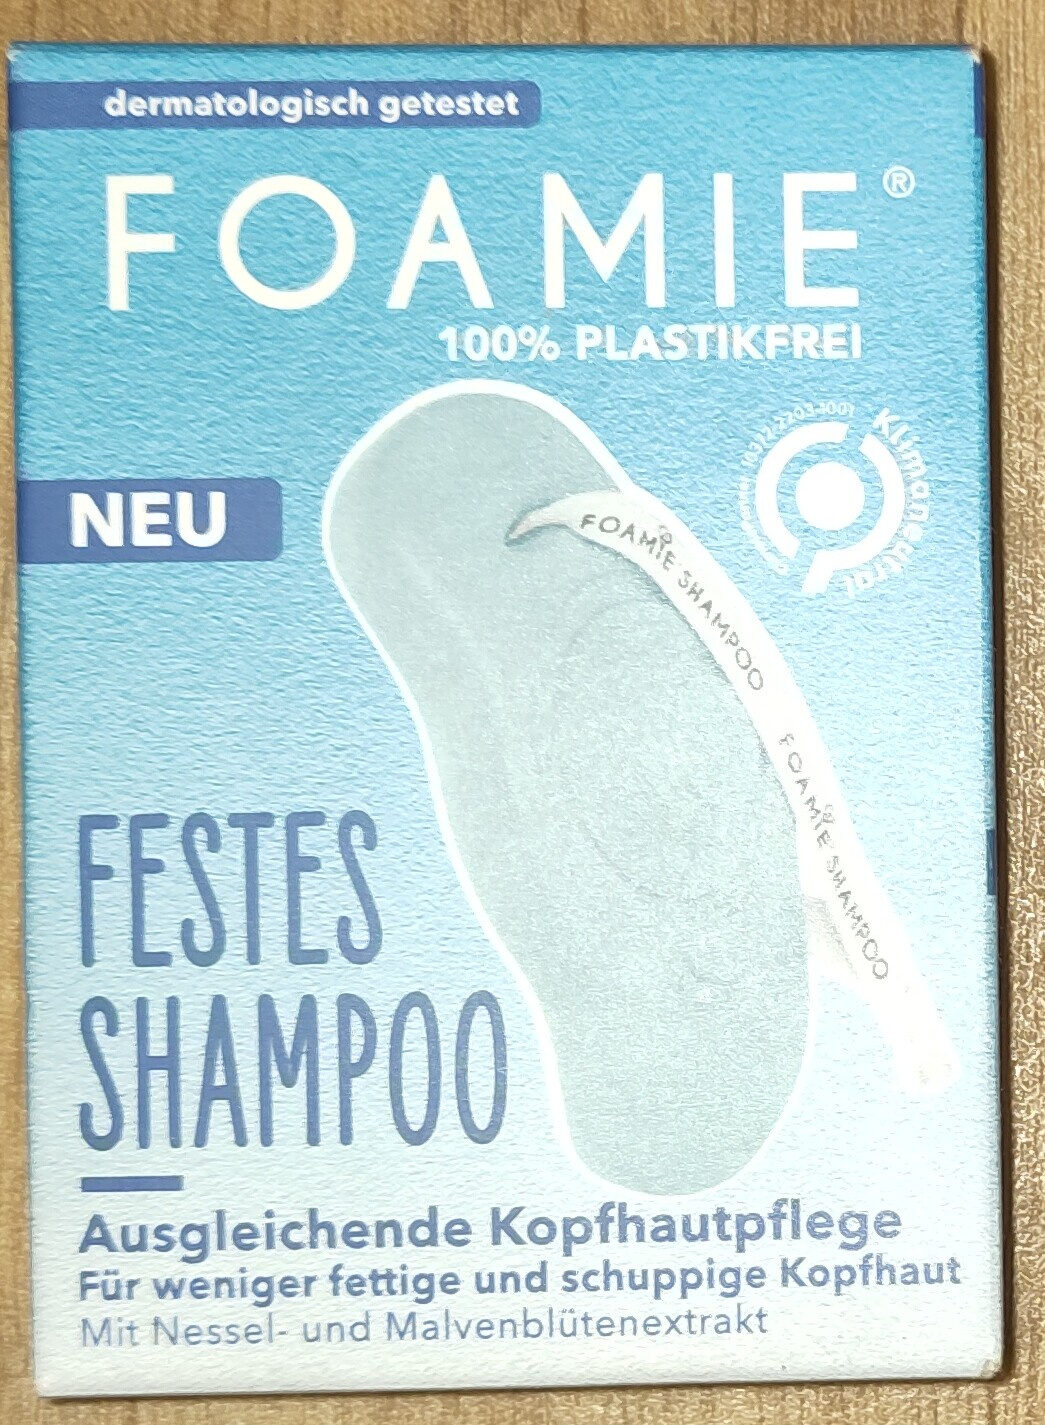 festes Shampoo Ausgegleichende Kopfhautpflege - Produkt - de